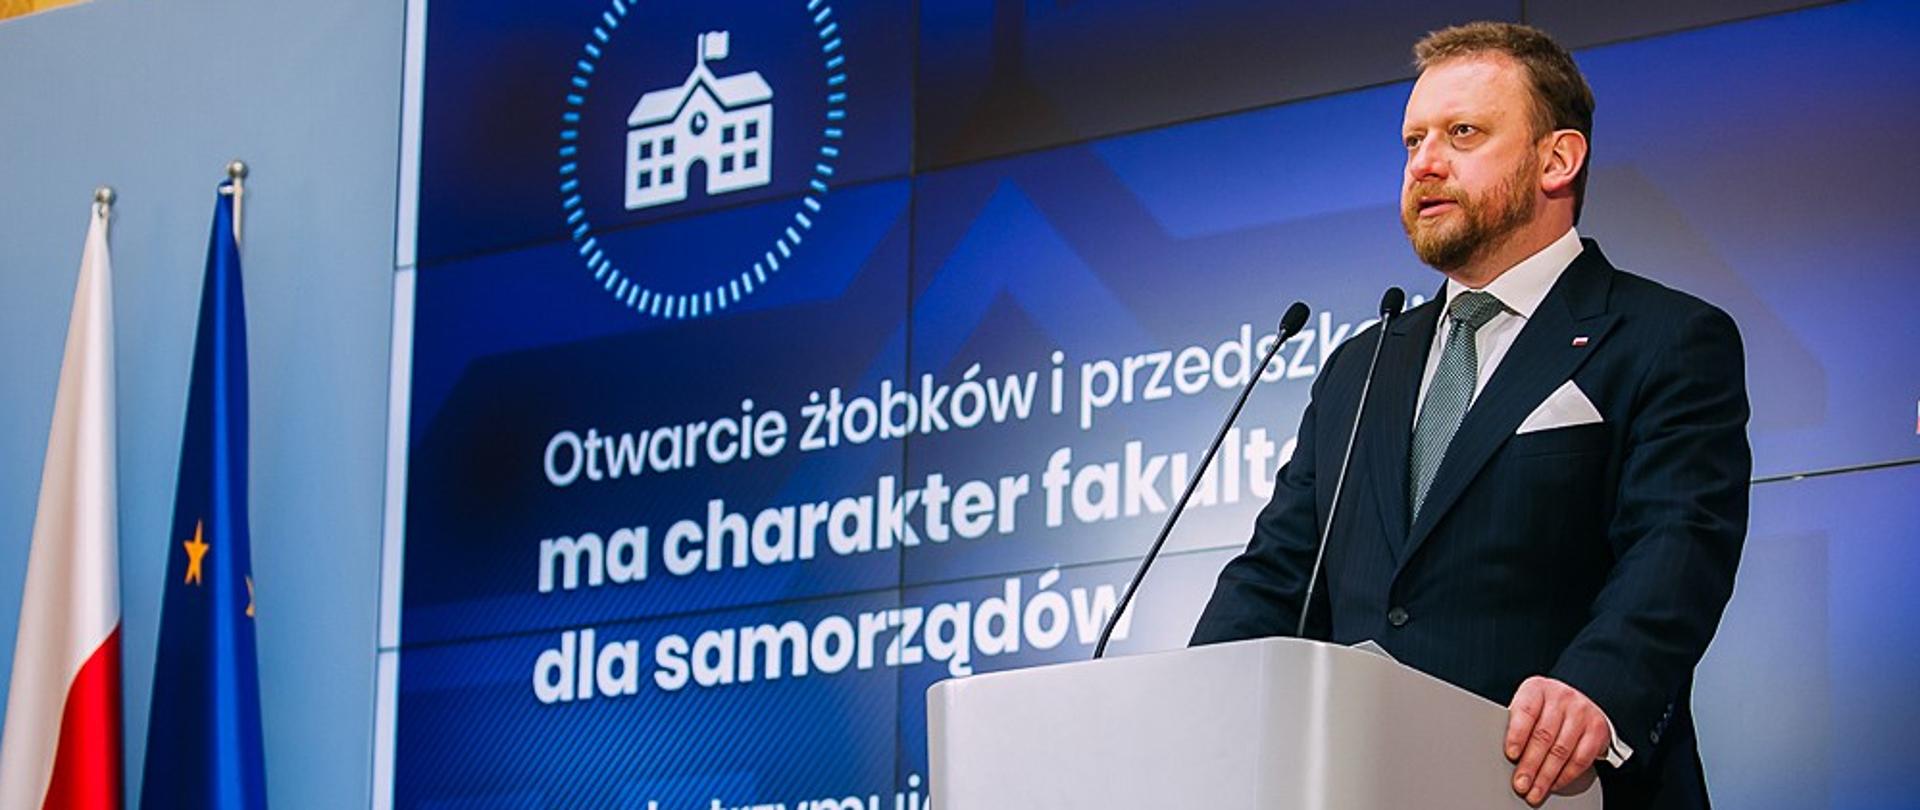  Minister Łukasz Szumowski podczas przemówienia.
